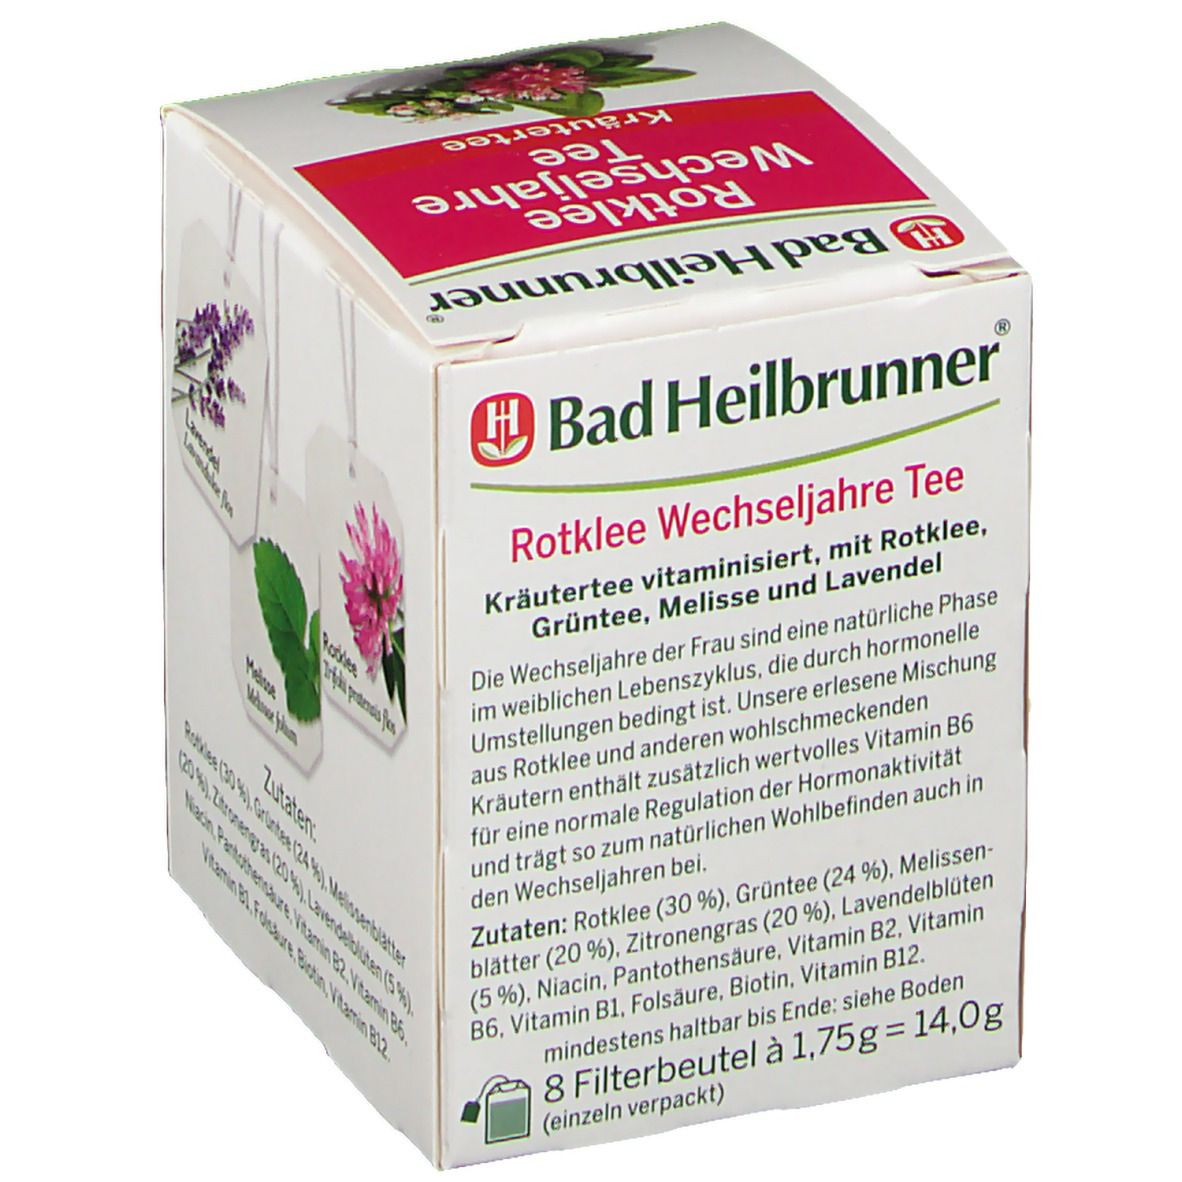 Bad Heilbrunner® Rotklee Wechseljahre Tee